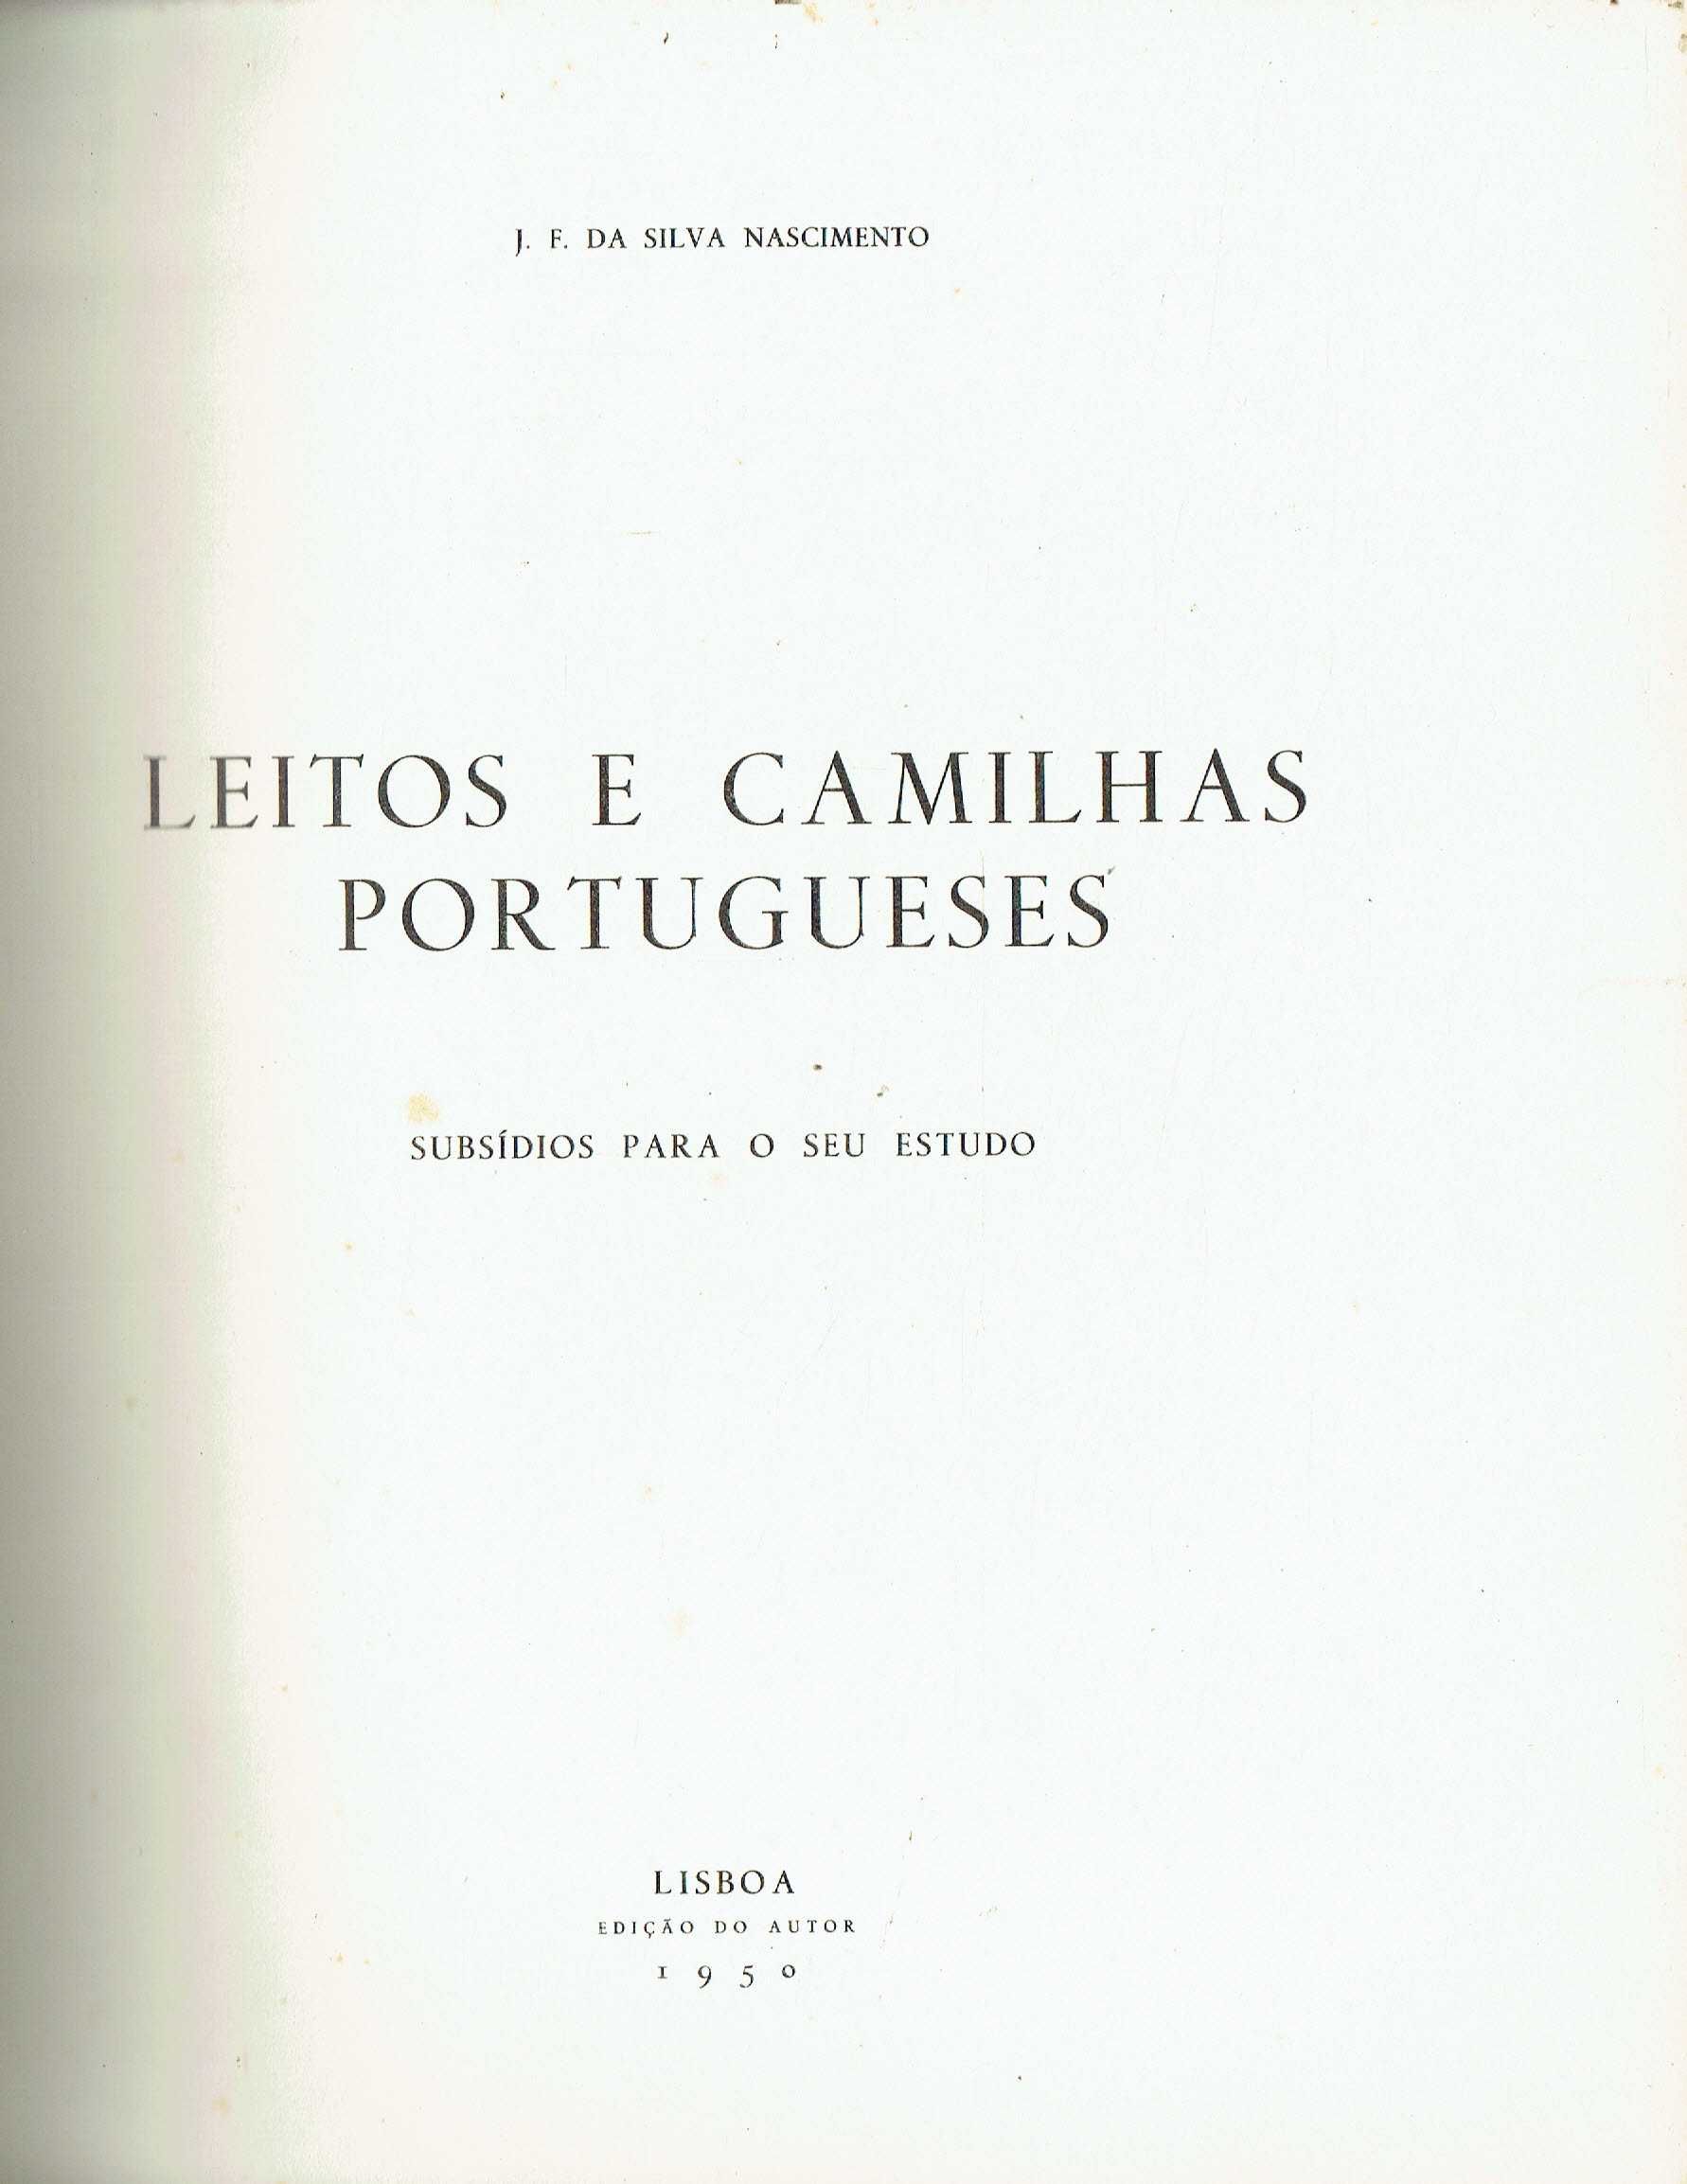 14937

Leitos E Camilhas Portugueses
de J. F. da Silva Nascimento